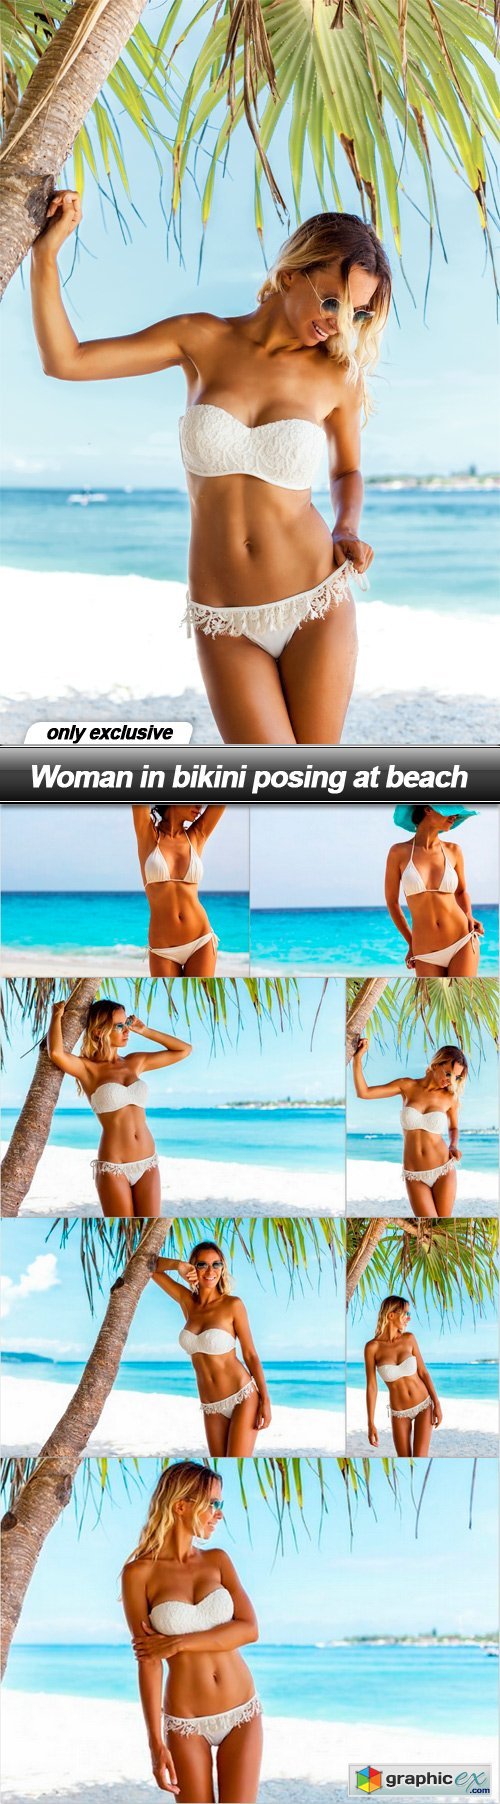 Woman in bikini posing at beach - 7 UHQ JPEG